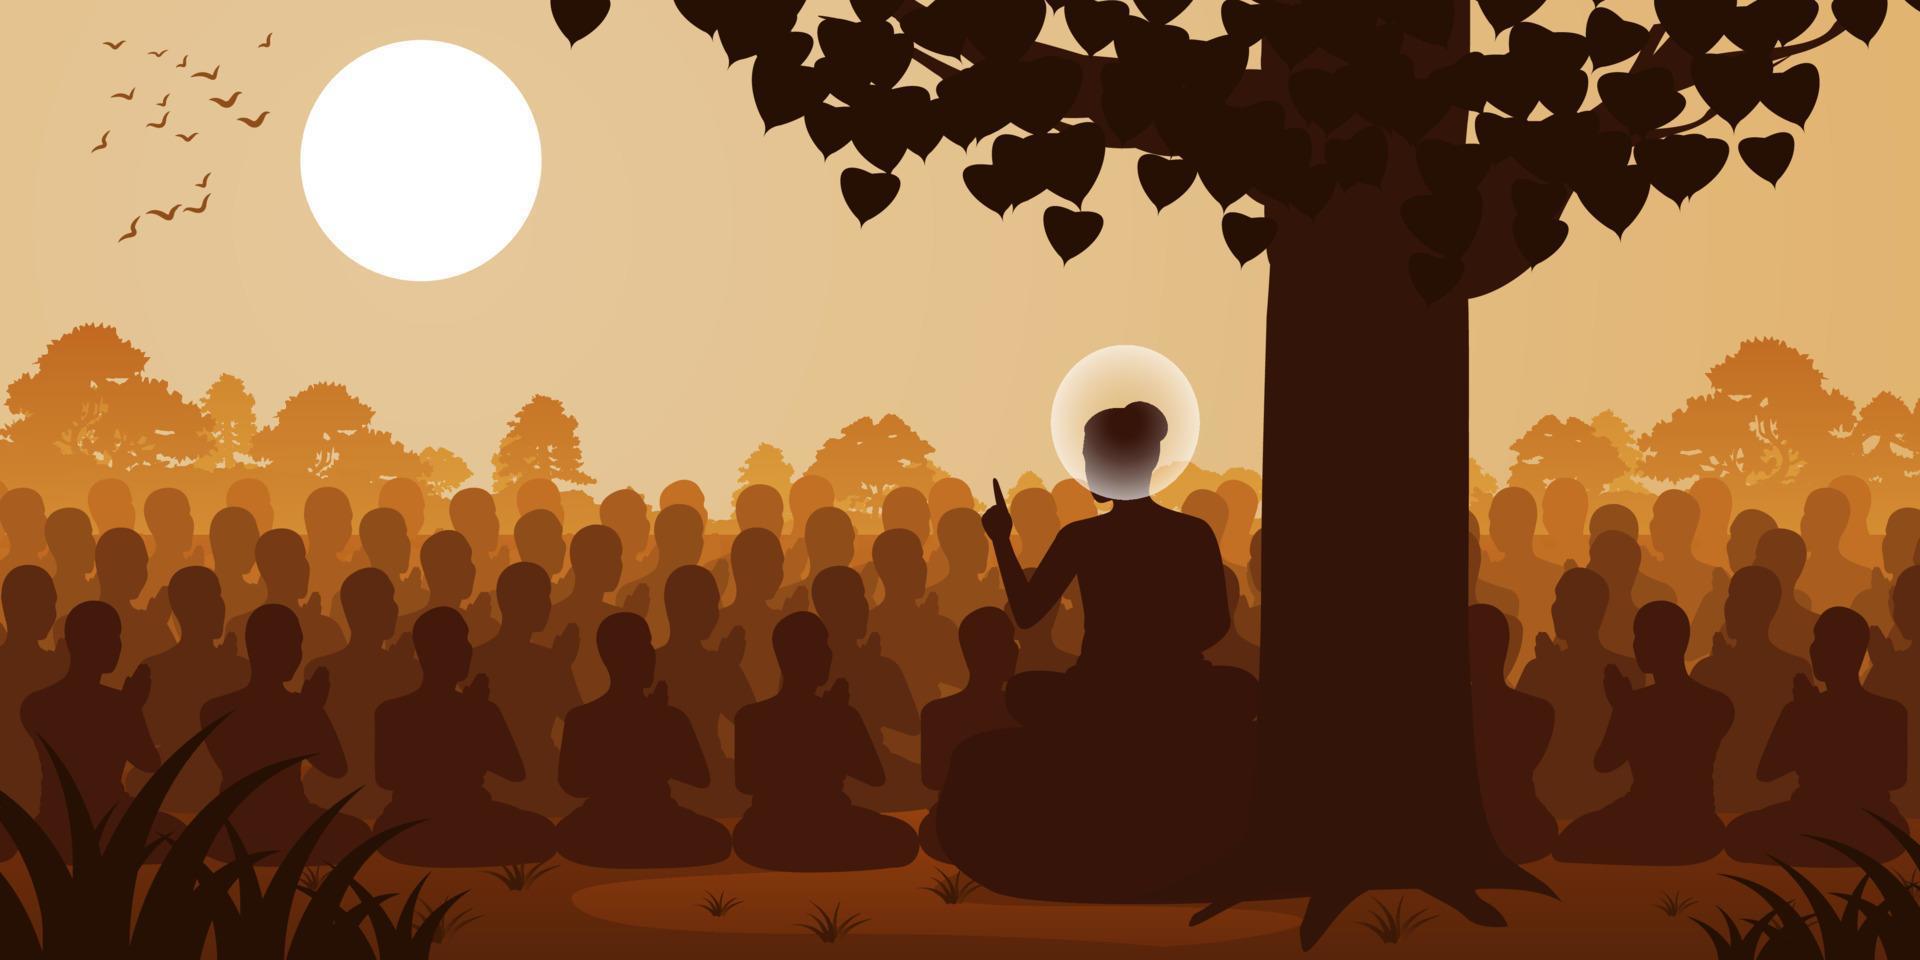 señor de buda sermón dharma a multitud de monjes, estilo silueta vector